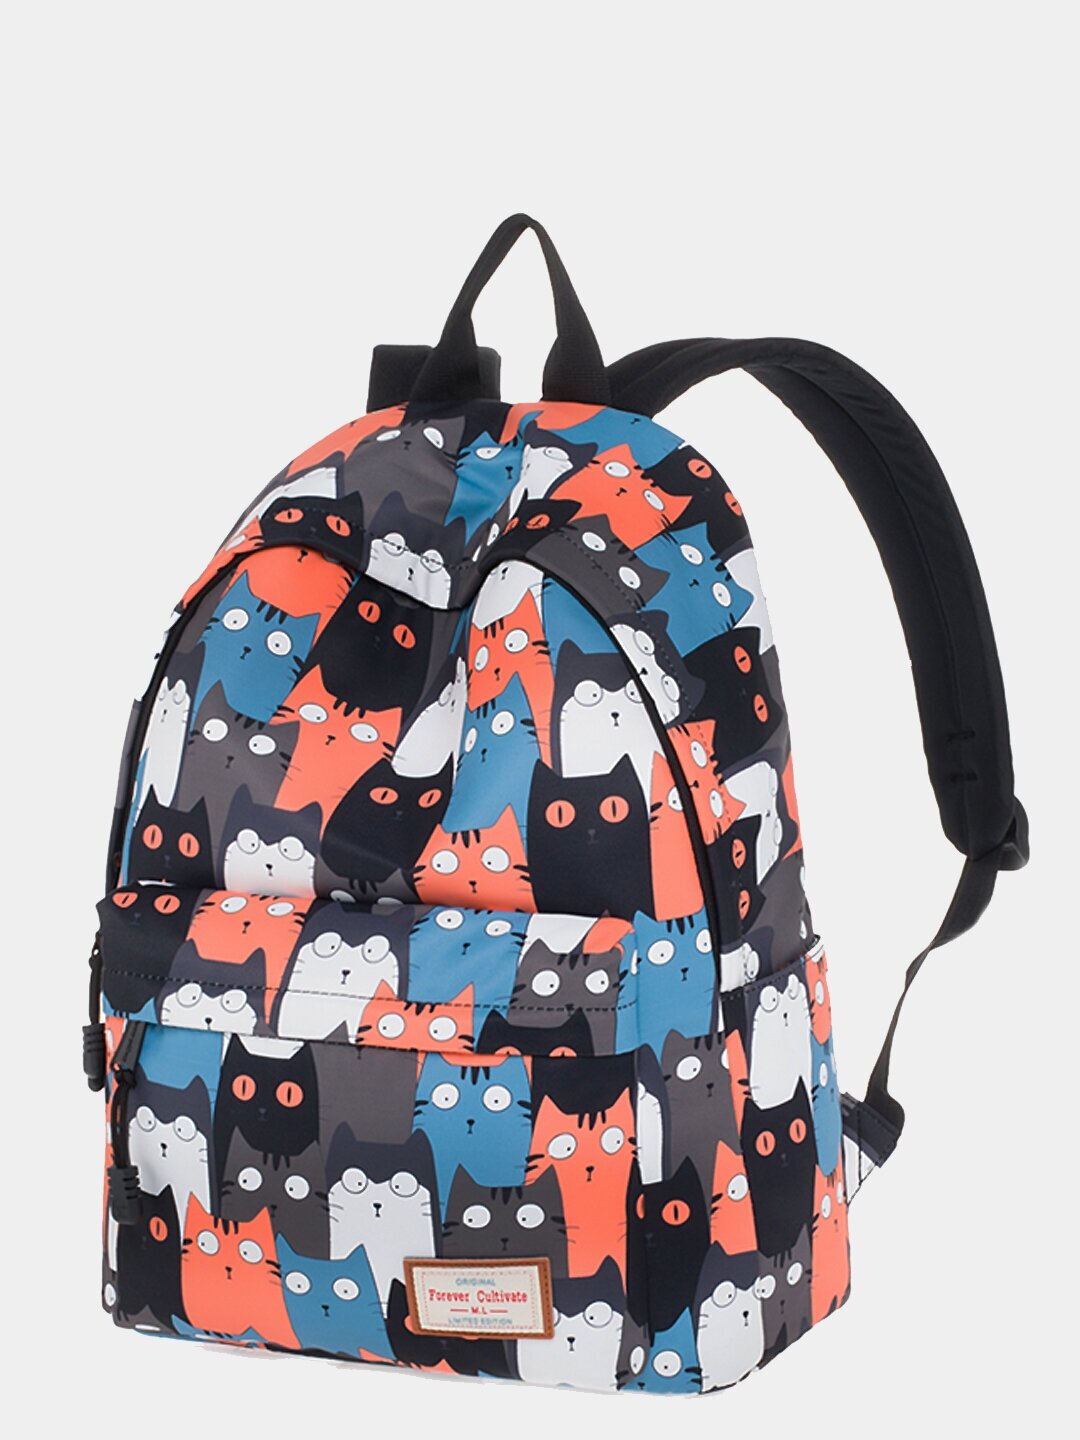 Рюкзак школьный Forever Cultivate 9012к5, для девочки, с влагозащитой, с котиками, оранжевый/черный/синий